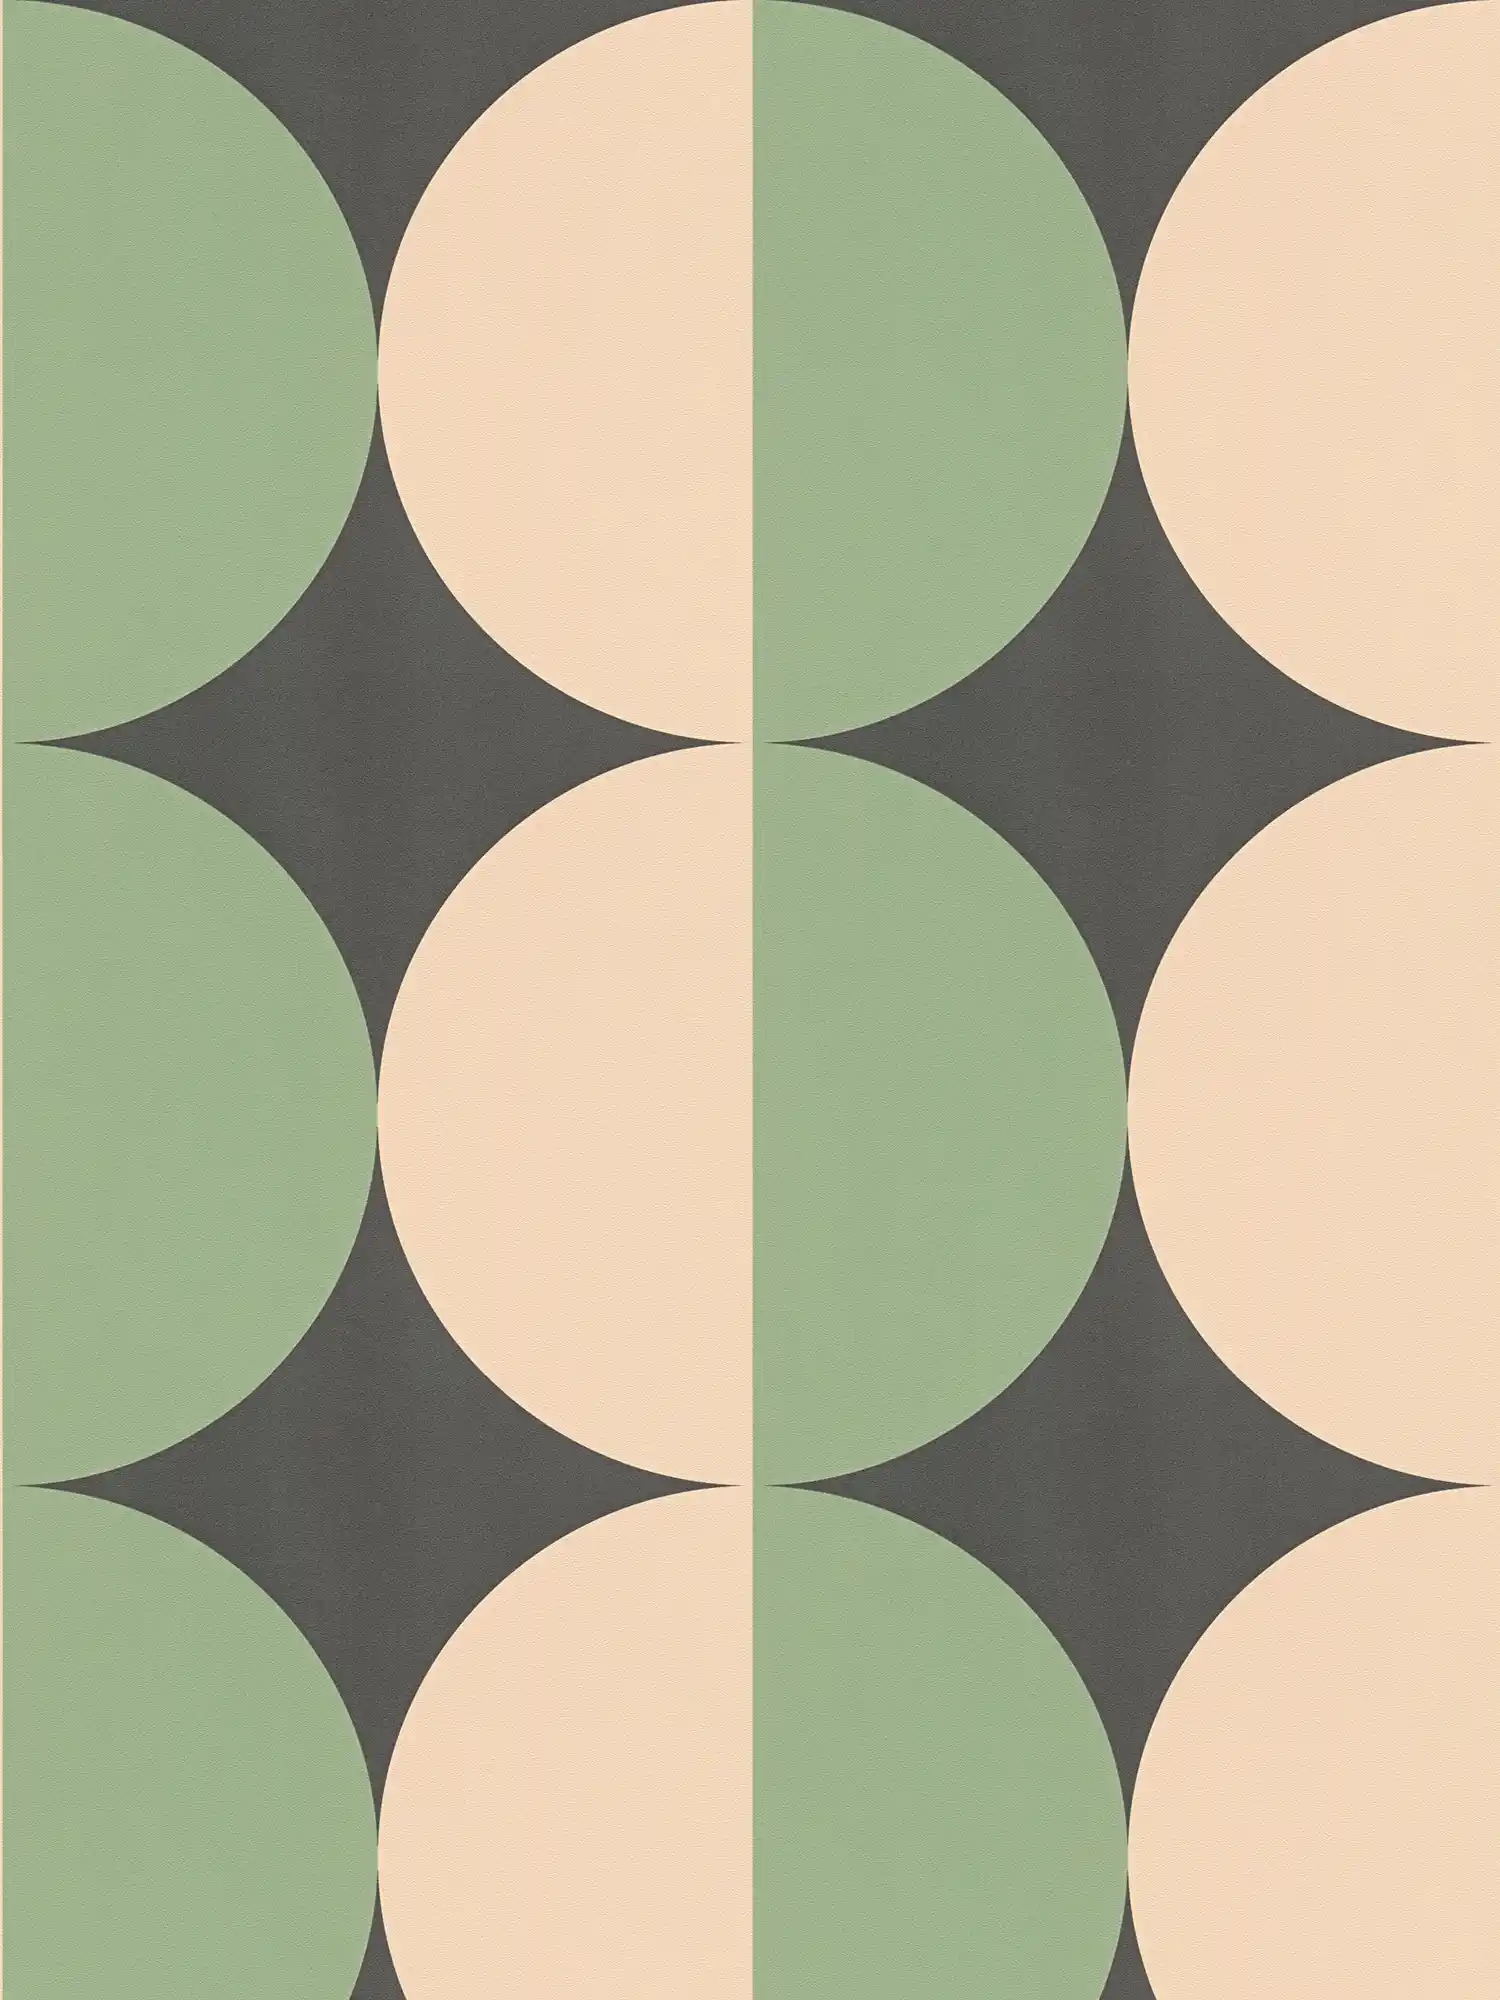         Graphic circle pattern non-woven wallpaper retro - green, beige, black
    